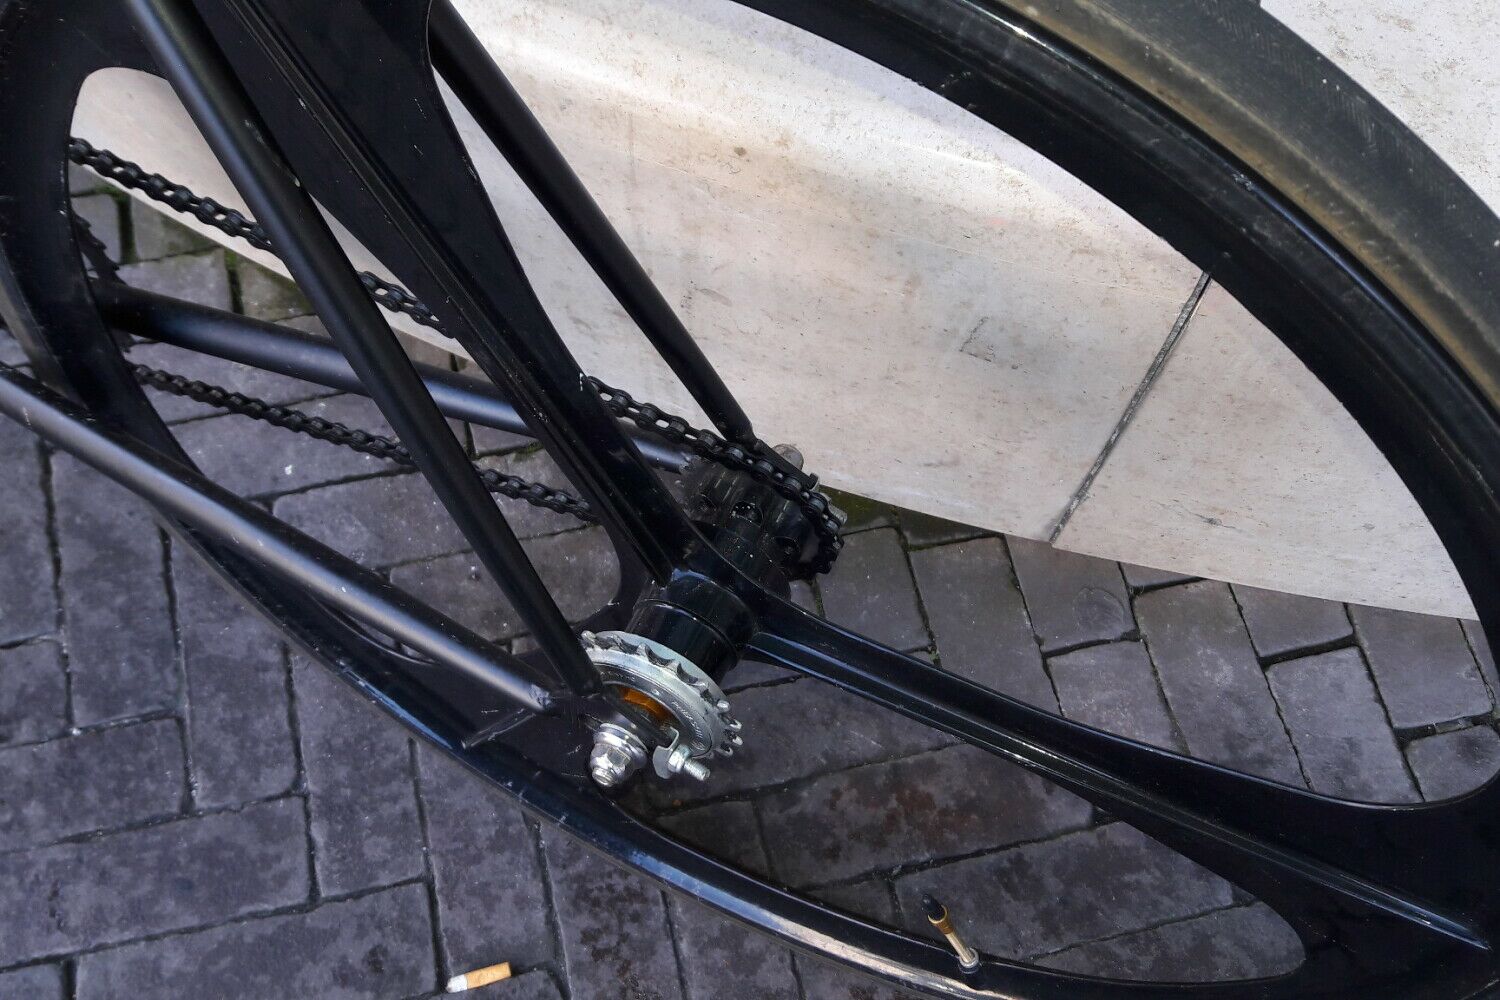 Fixed/One speed bike